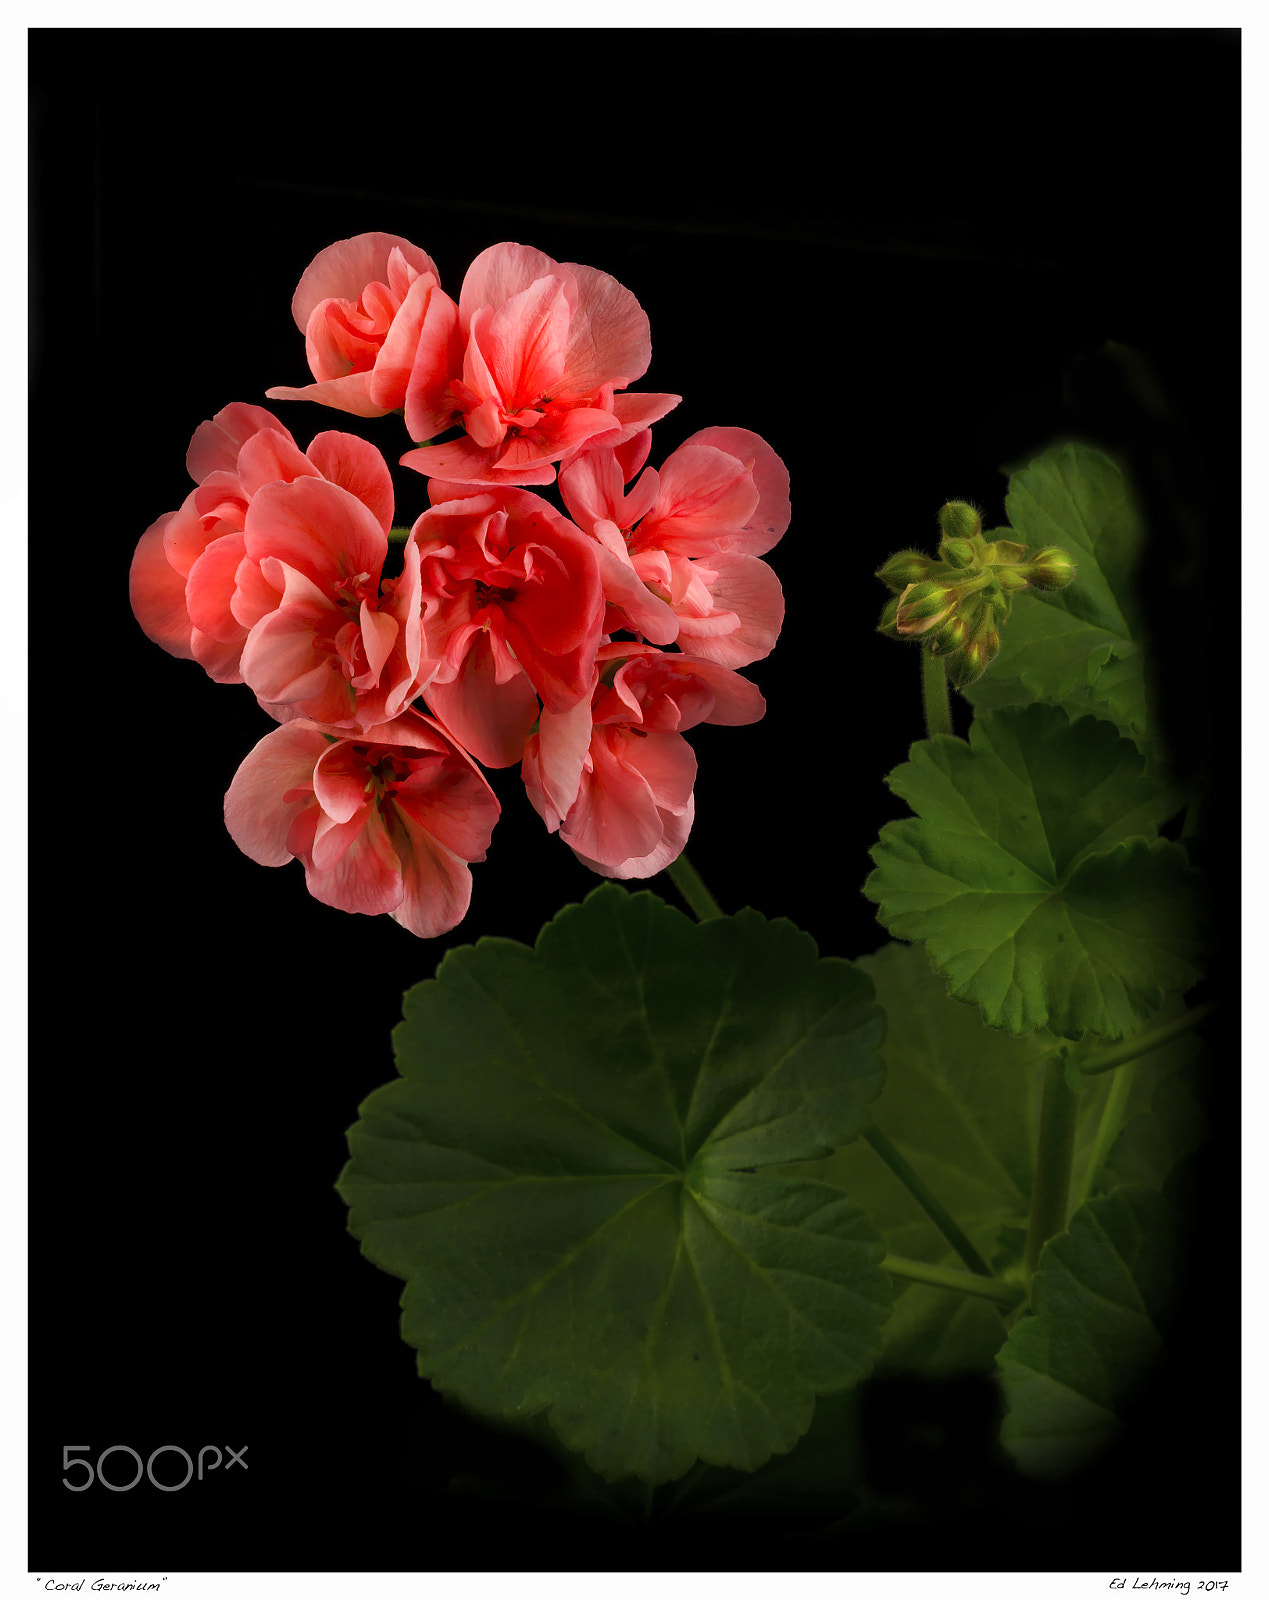 Nikon D800 sample photo. Coral geranium photography